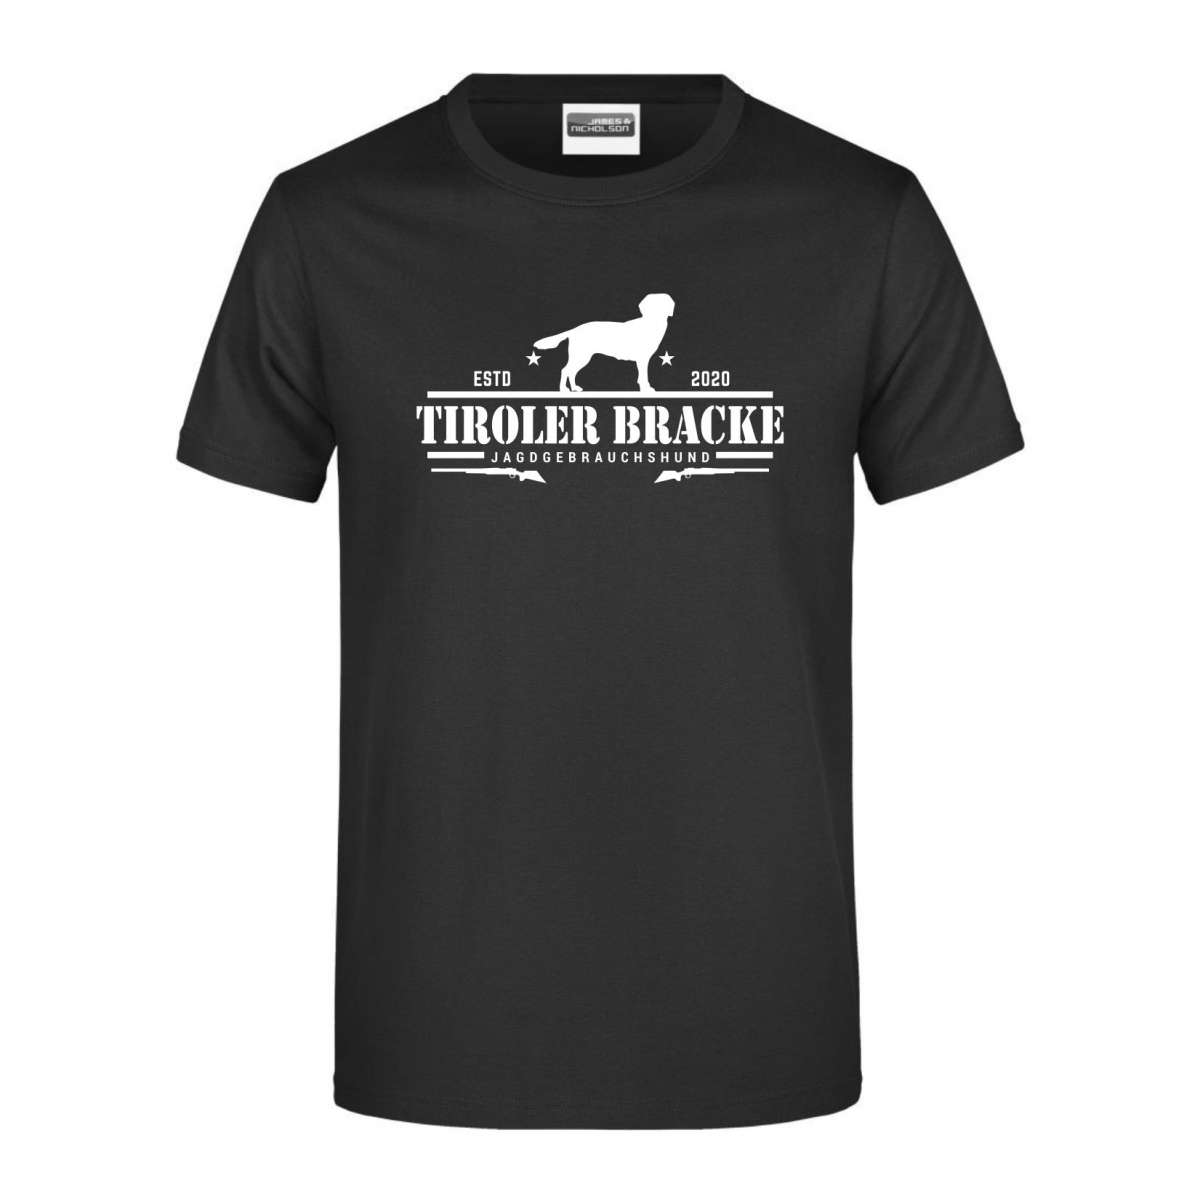 Damen T-Shirt TIROLER BRACKE FEUER UND FLAMME by Siviwonder Hundemotiv